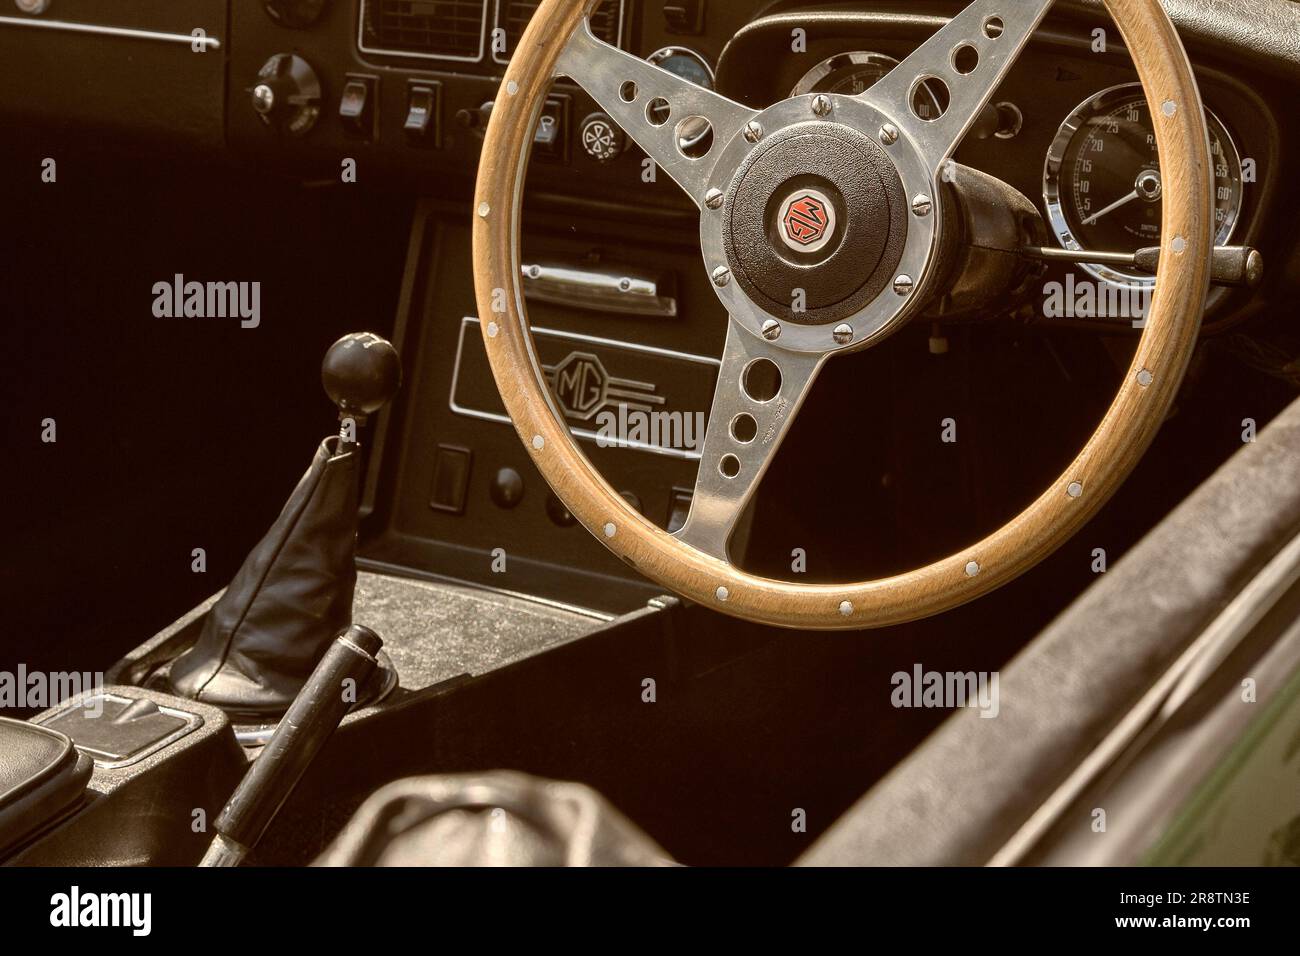 L'intérieur d'un Roadster 1970s MGB, avec le logo MG, le tableau de bord et le volant en bois. Voiture de sport britannique lors d'un spectacle de voiture classique et vintage. Banque D'Images